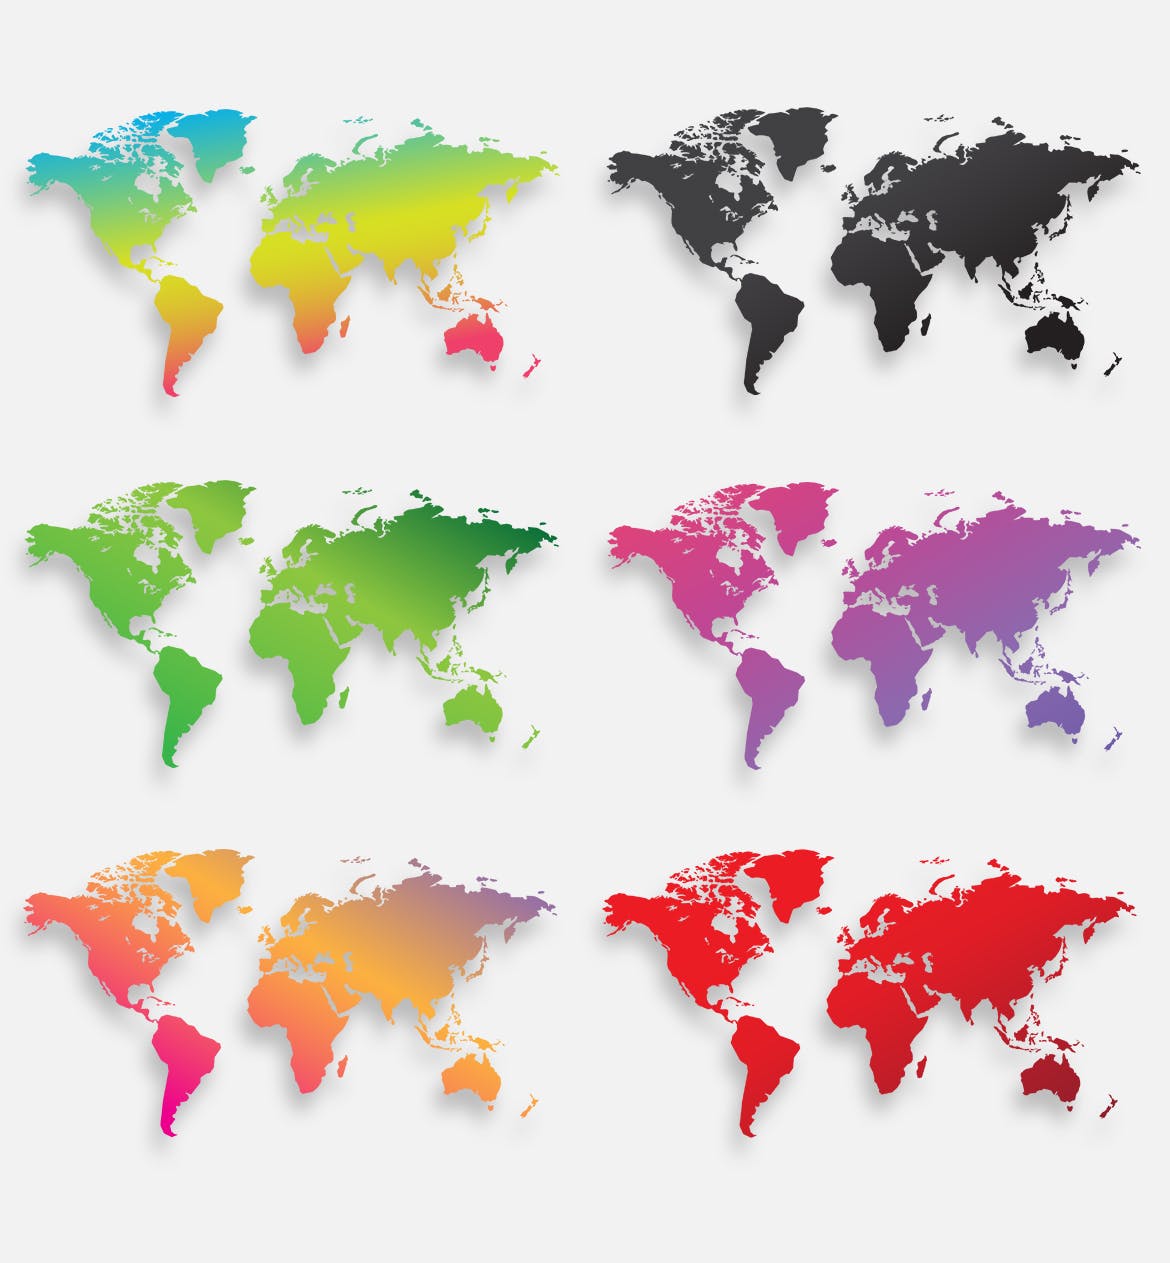 40种设计风格世界地图矢量图形设计素材下载 Map of the world 40 Version插图6